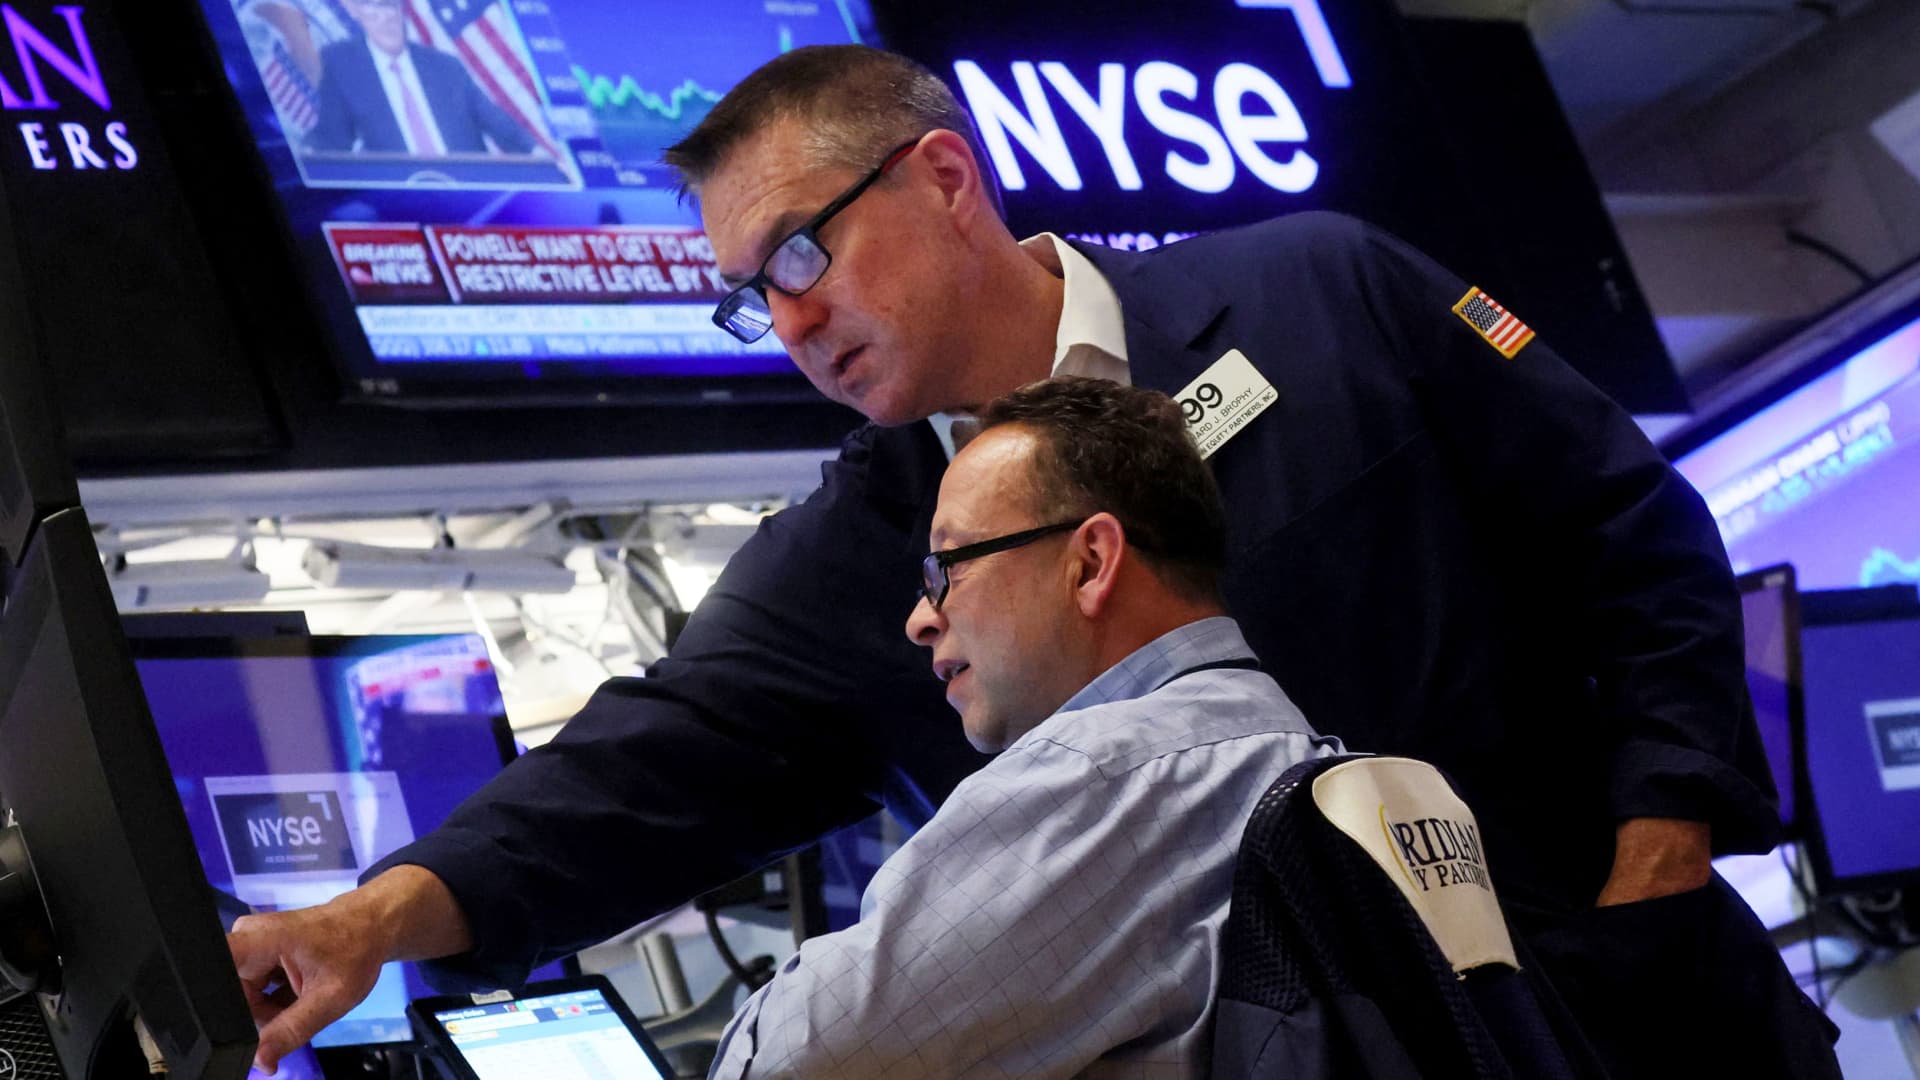 Salto del mercado después de que la Fed levantara la ‘trampa’, advierte Morgan Stanley a los inversores